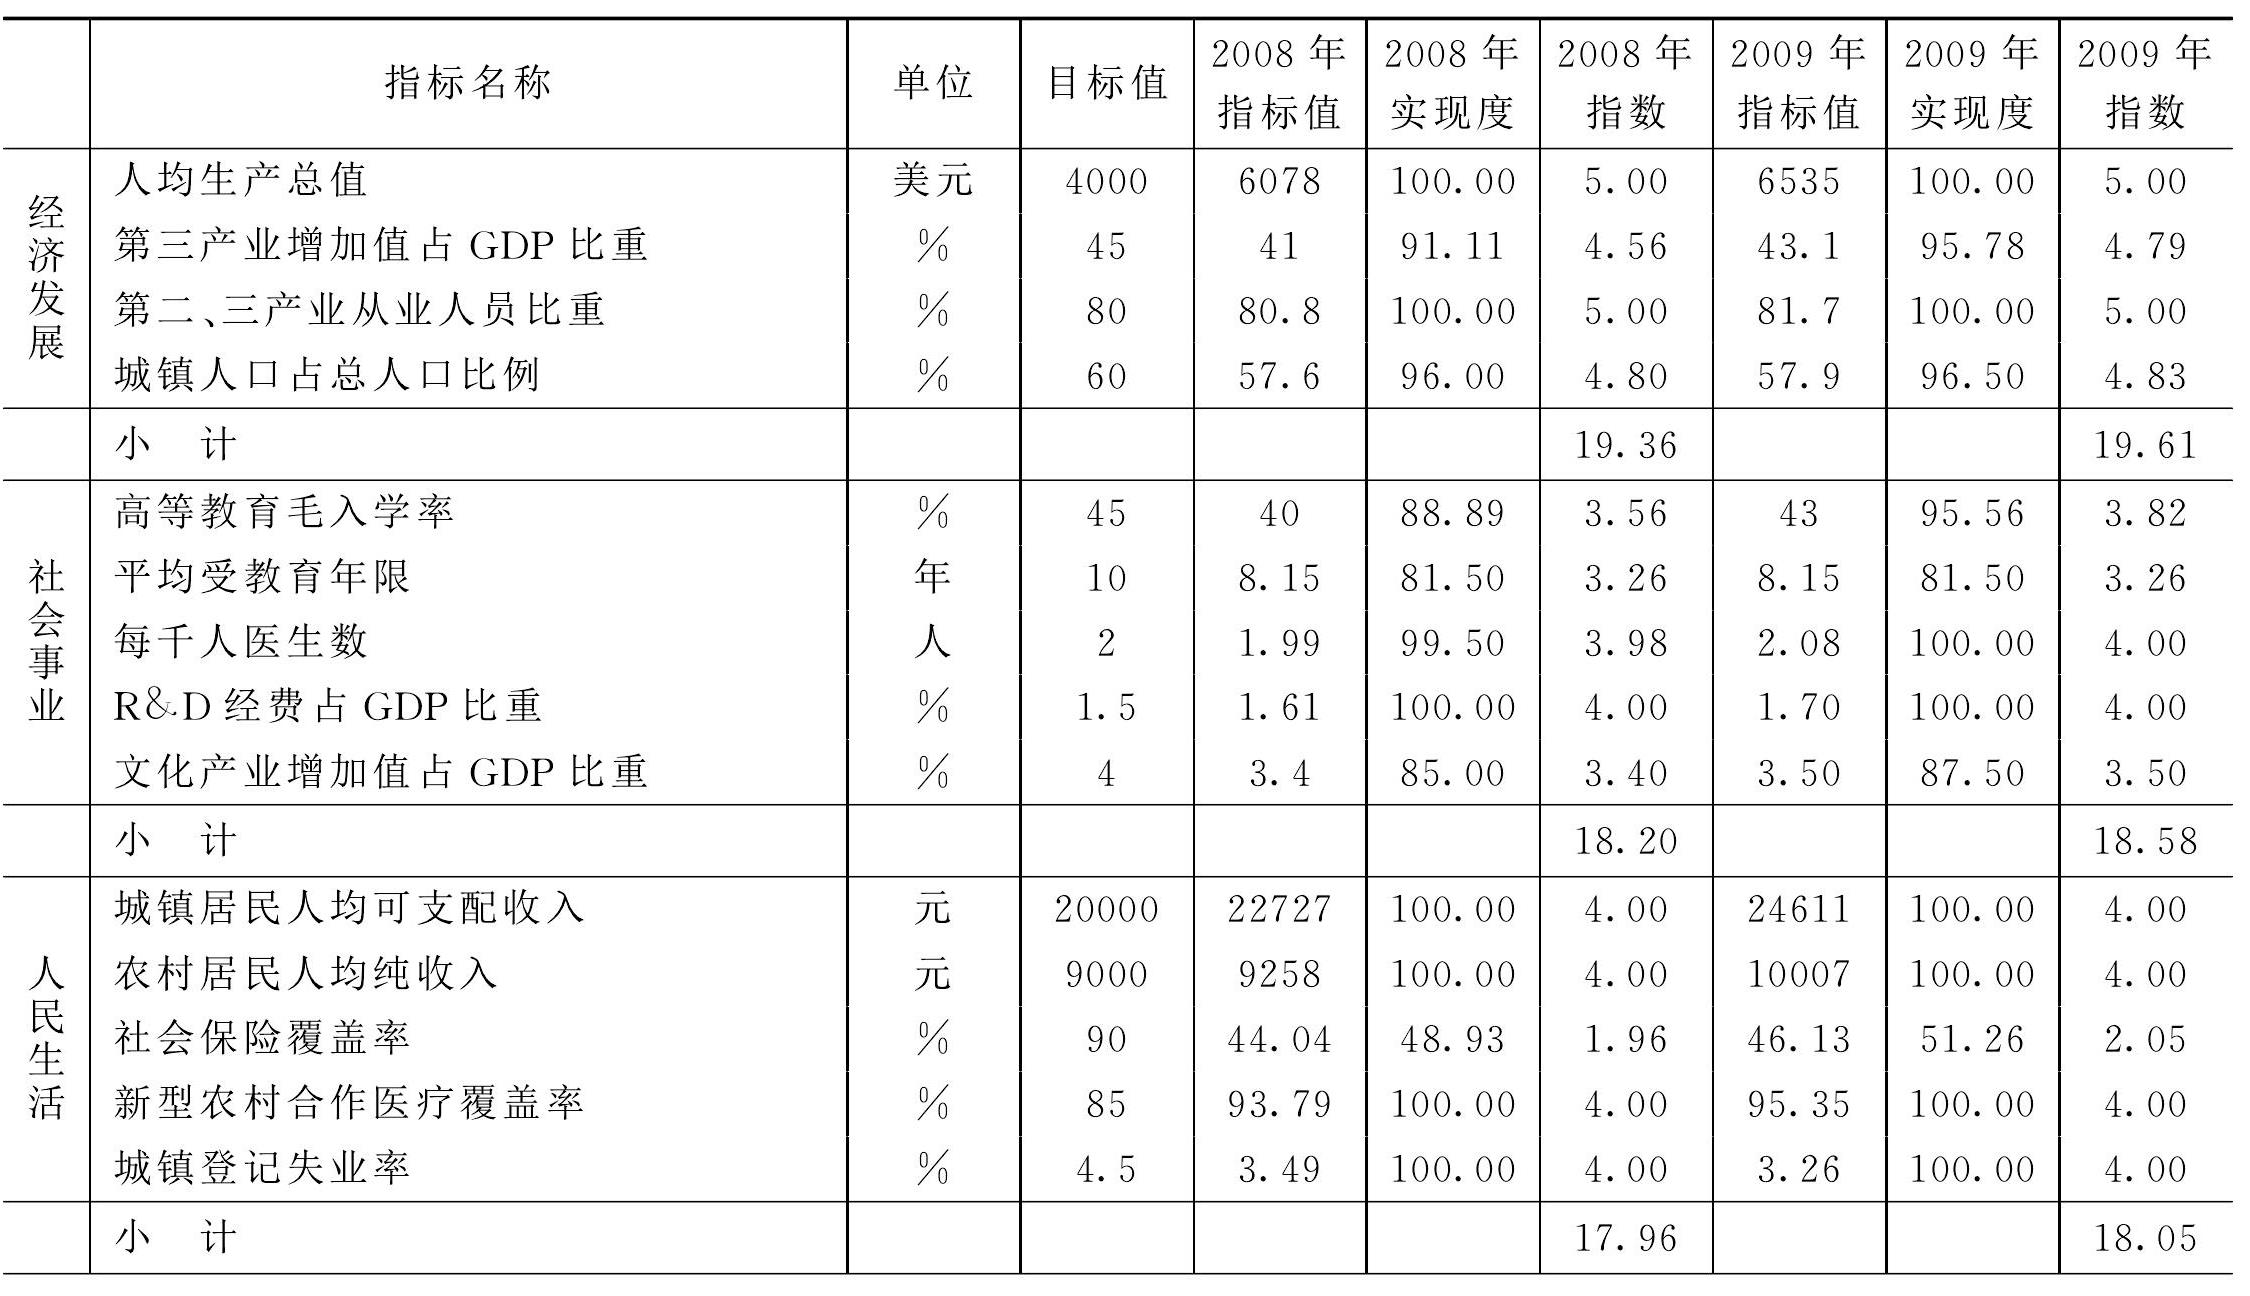 附录 2009年浙江全面小康社会评价指标体系及测算